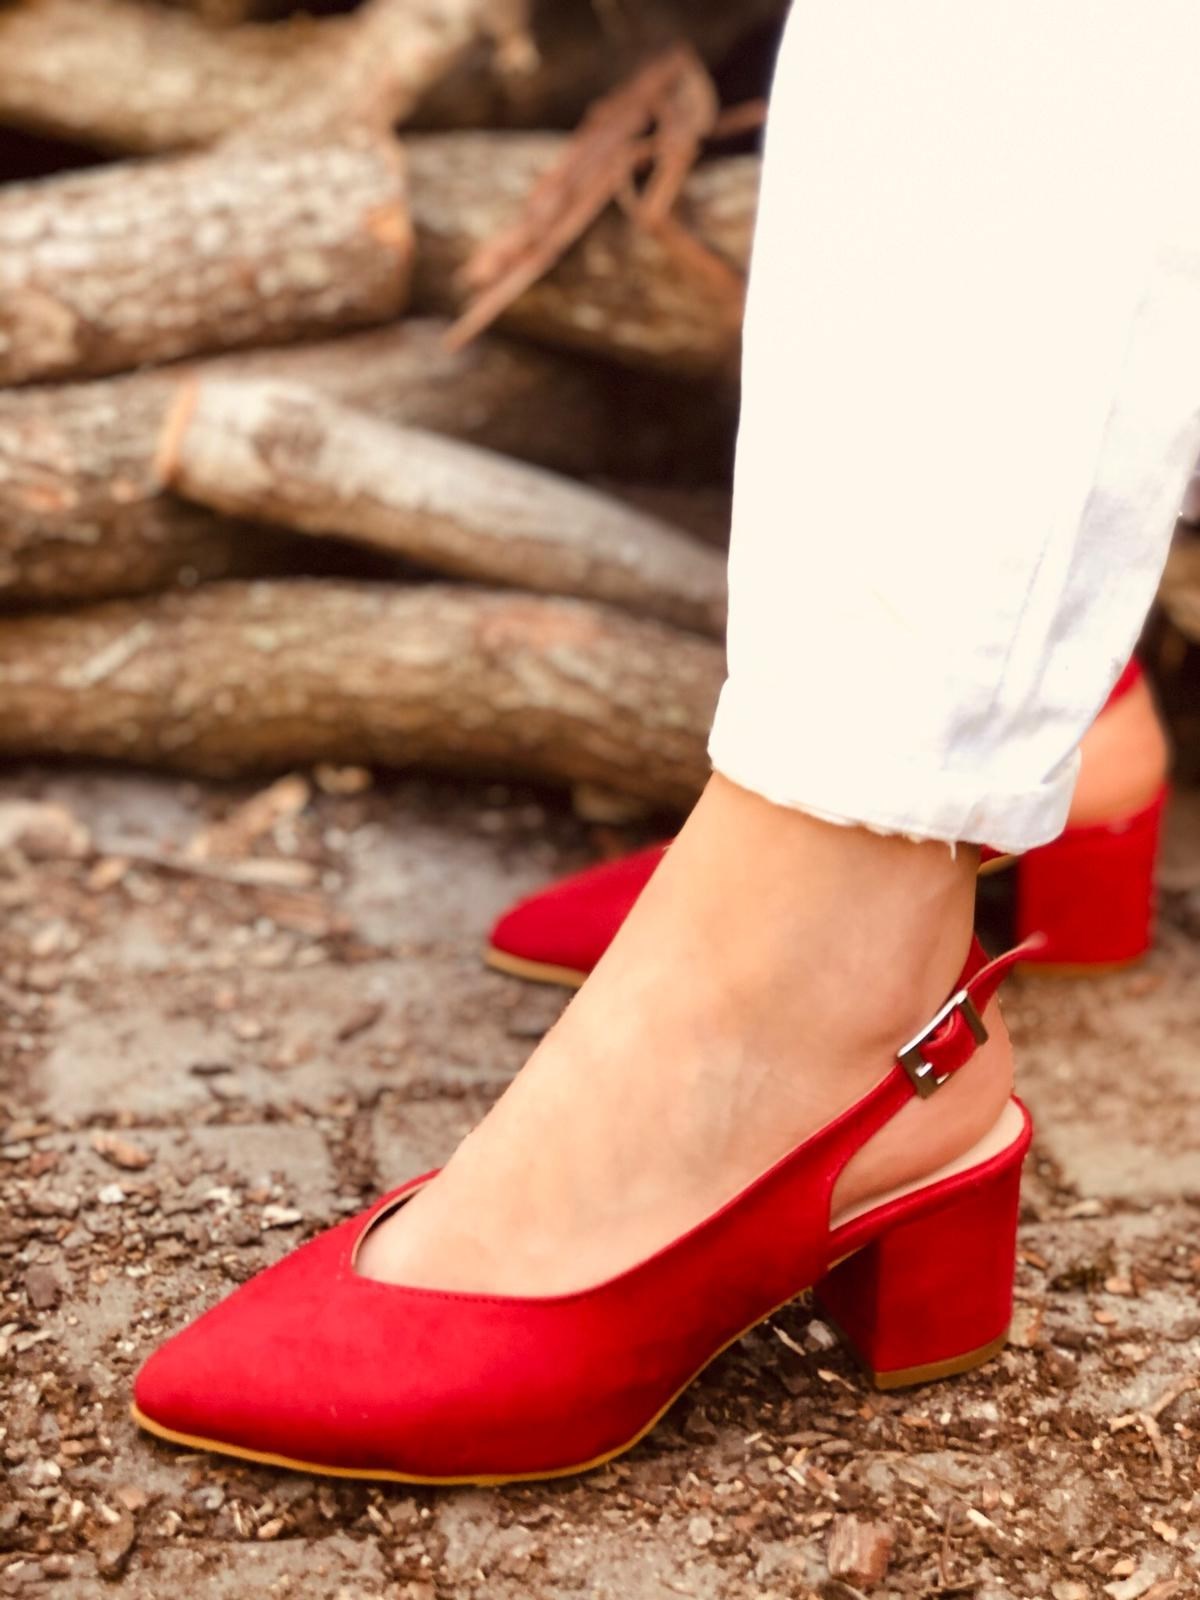 Kırmızı (Sanfa) Kadın Topuklu Ayakkabı Bayan Topuklu Ayakkabı l Erva'nın  Butiği